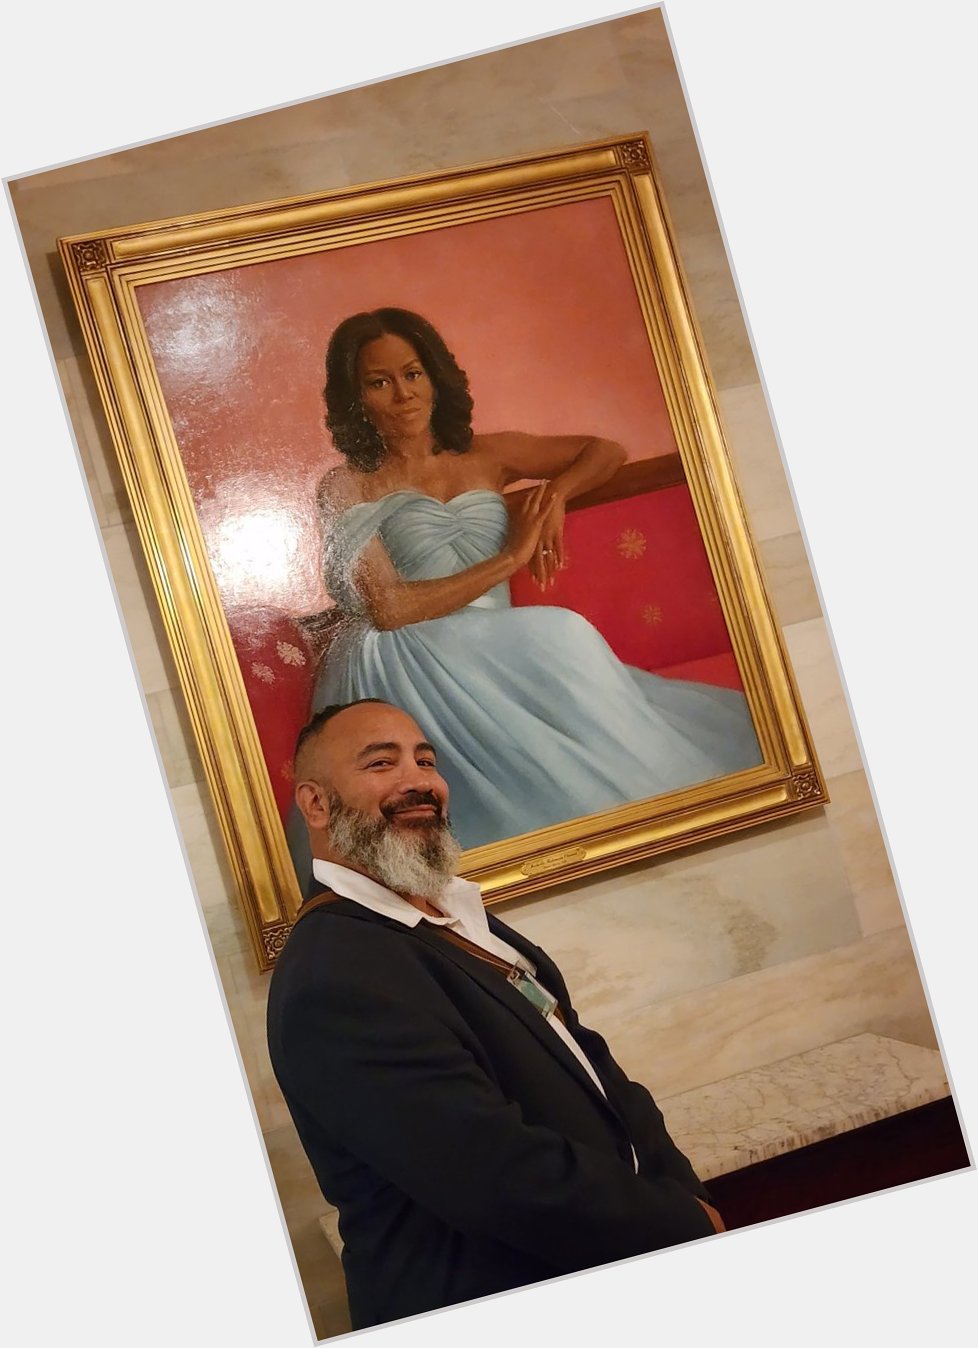 Happy Birthday Michelle Obama!  